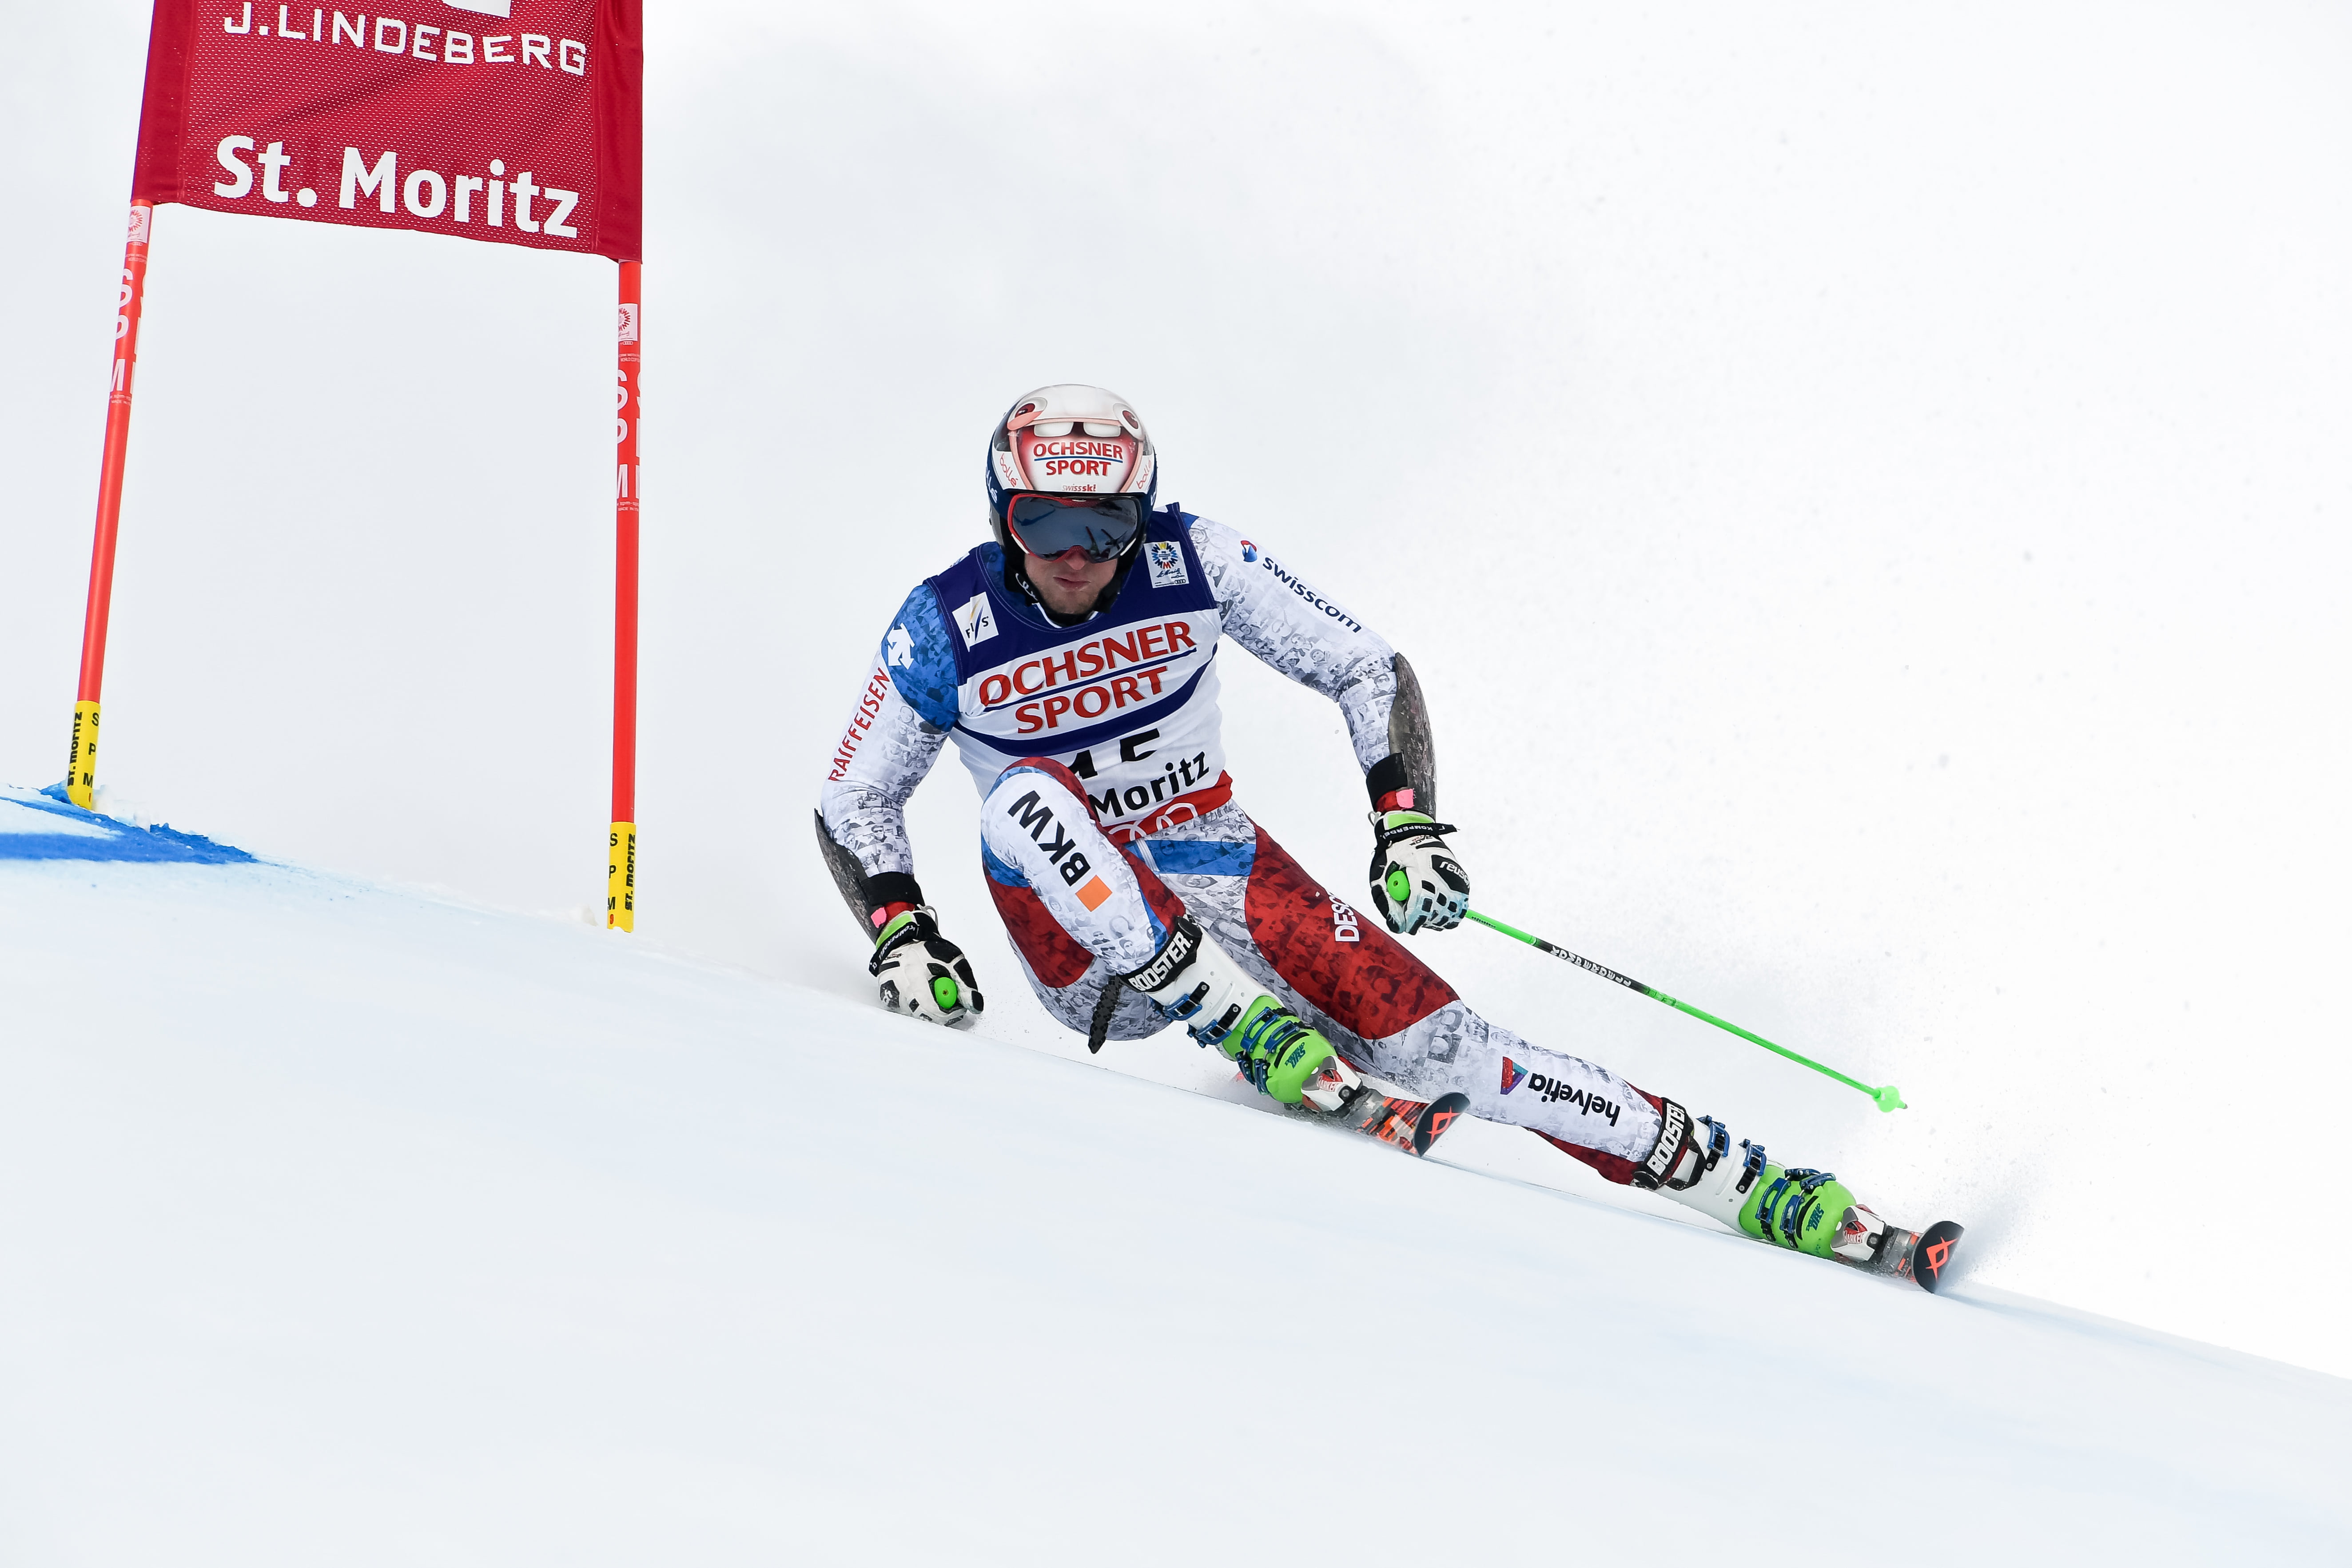 World Ski Championships 2017 St. Moritz